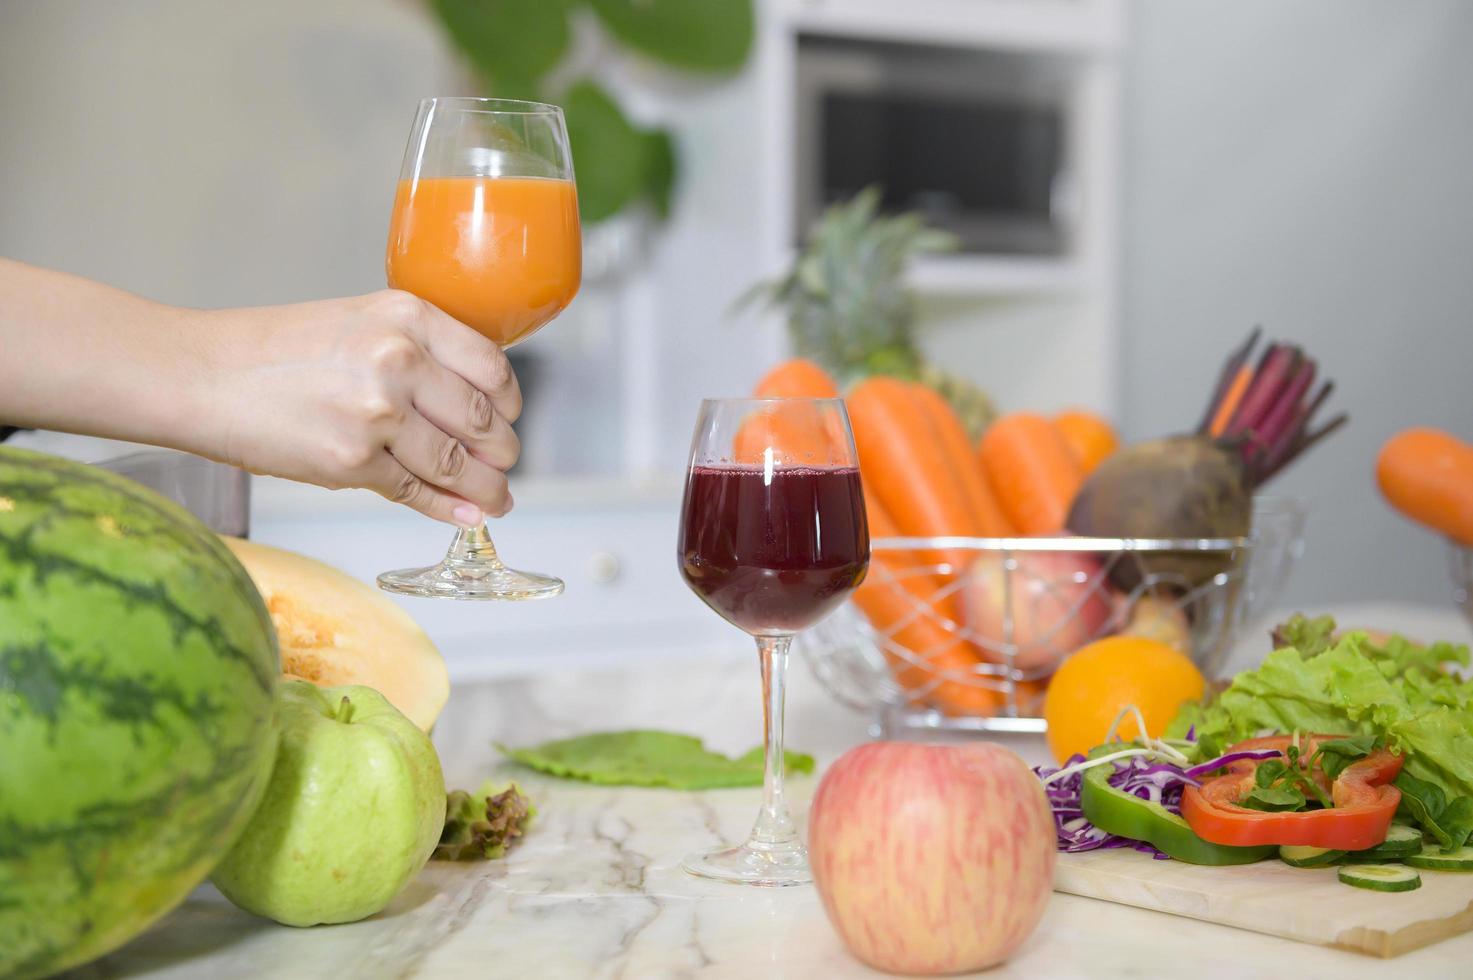 närbild av hand som håller ett glas hälsosam juice, medan grönsaker och juicepressar på bordet i köket, hälsokoncept foto